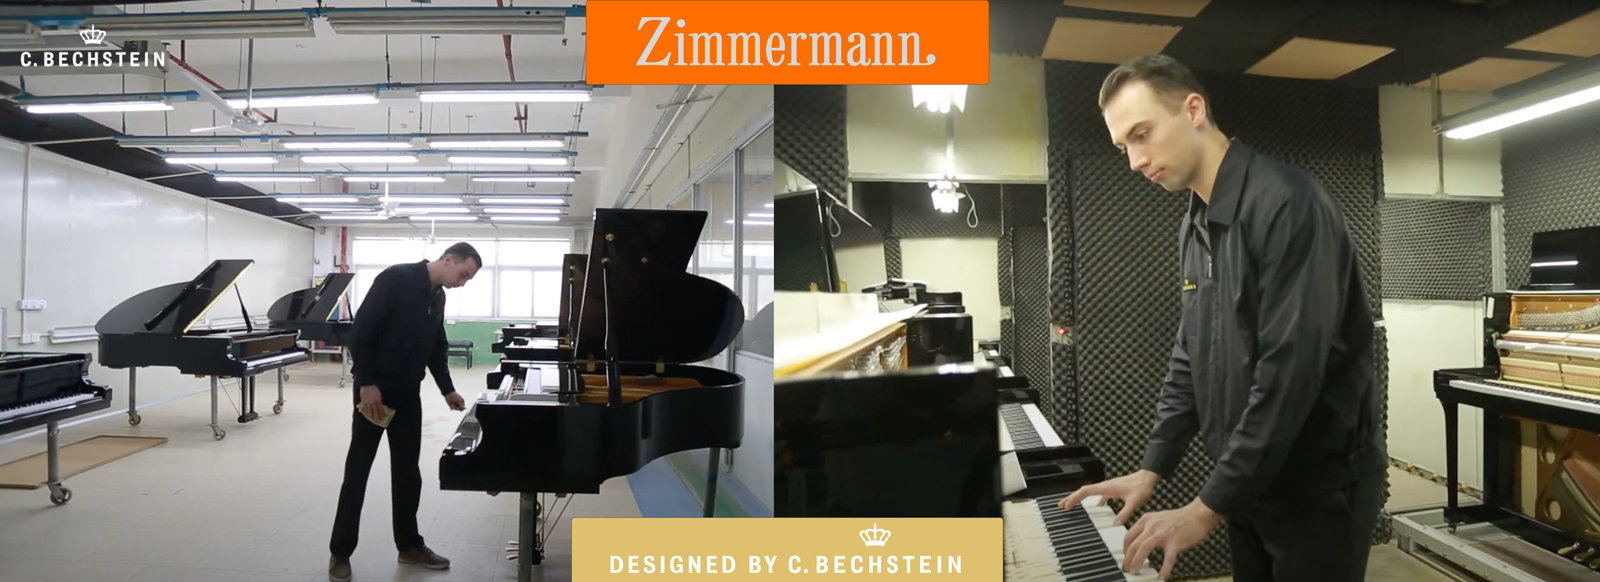 dan-piano-upright-zimmermann-chat-luong-am-thanh-chau-au